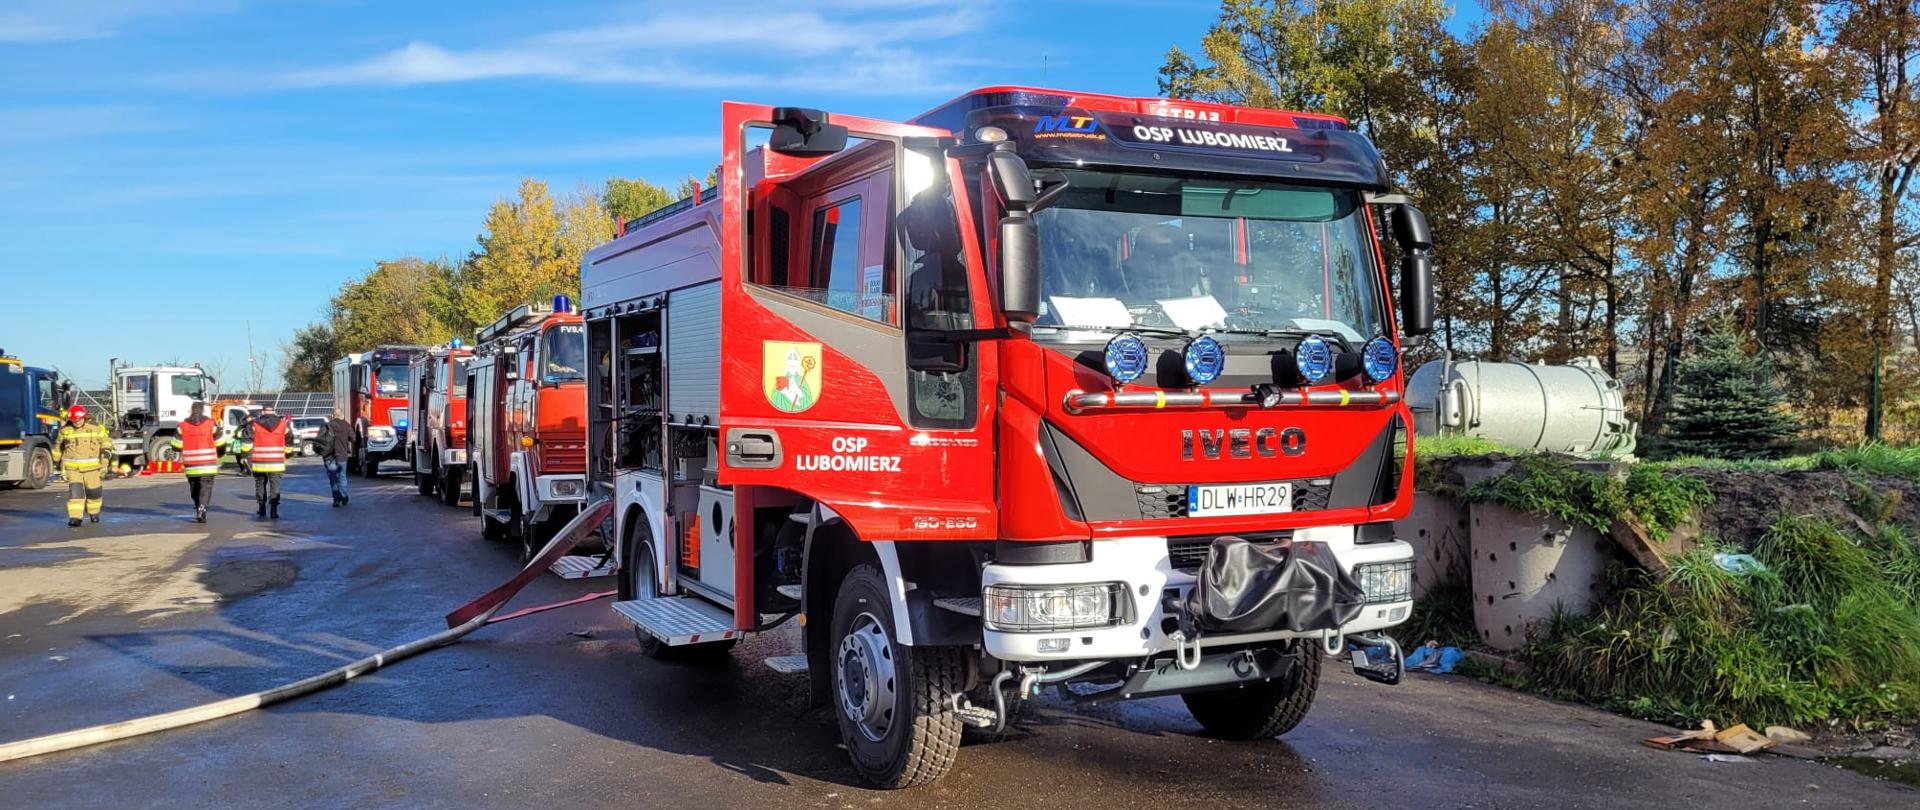 Na zdjęciu widoczne są samochodu ratowniczo-gaśnicze jednostek straży pożarnych, które biorą udział w ćwiczeniach powiatowych. W tle widoczni są ćwiczący strażacy.